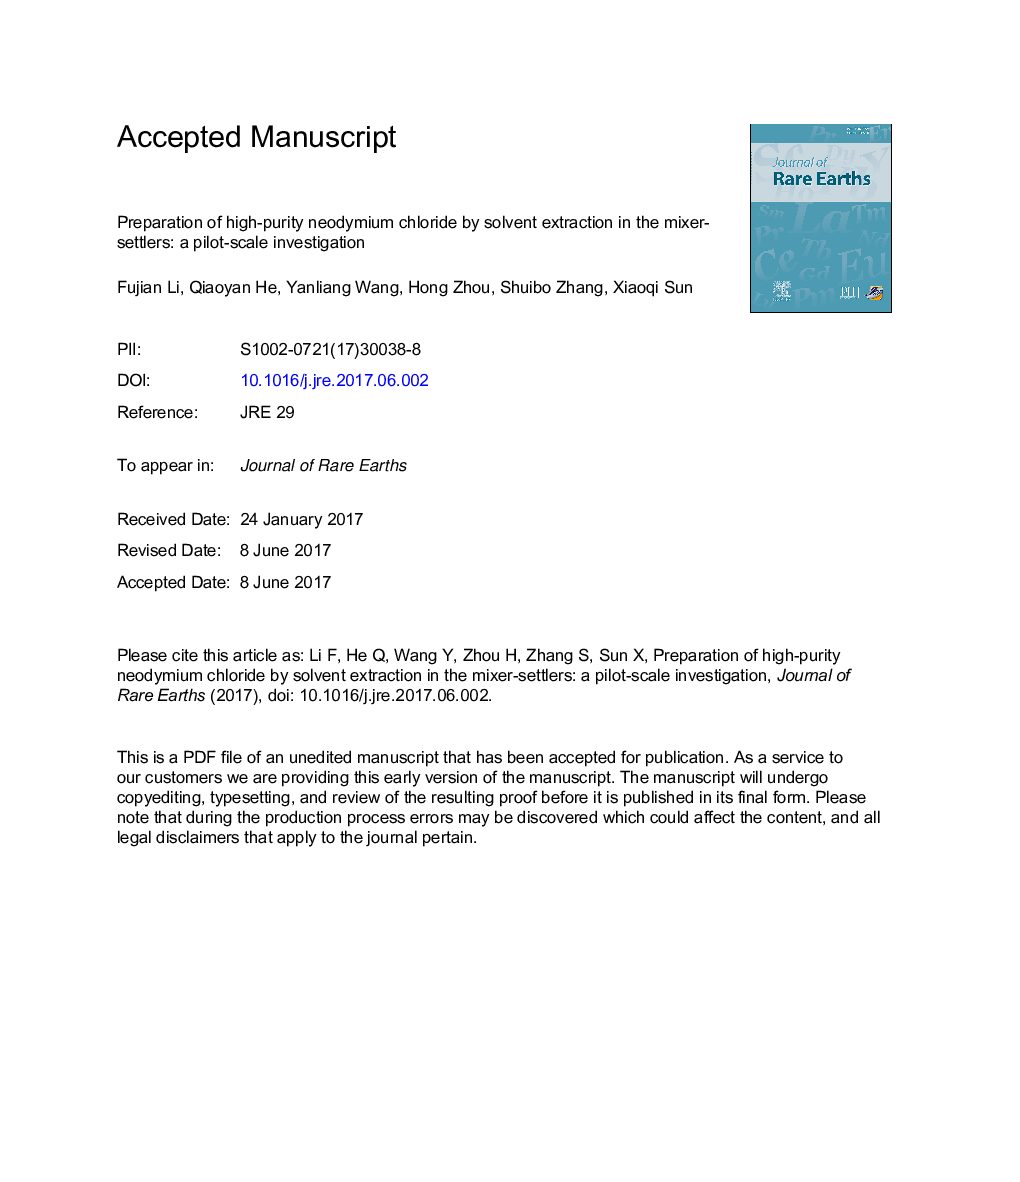 آماده سازی کلرید نئودیمیم با خلوص بالا با استفاده از استخراج حلال در مخلوط کنسانتره: یک تحقیق در مقیاس آزمایشی 